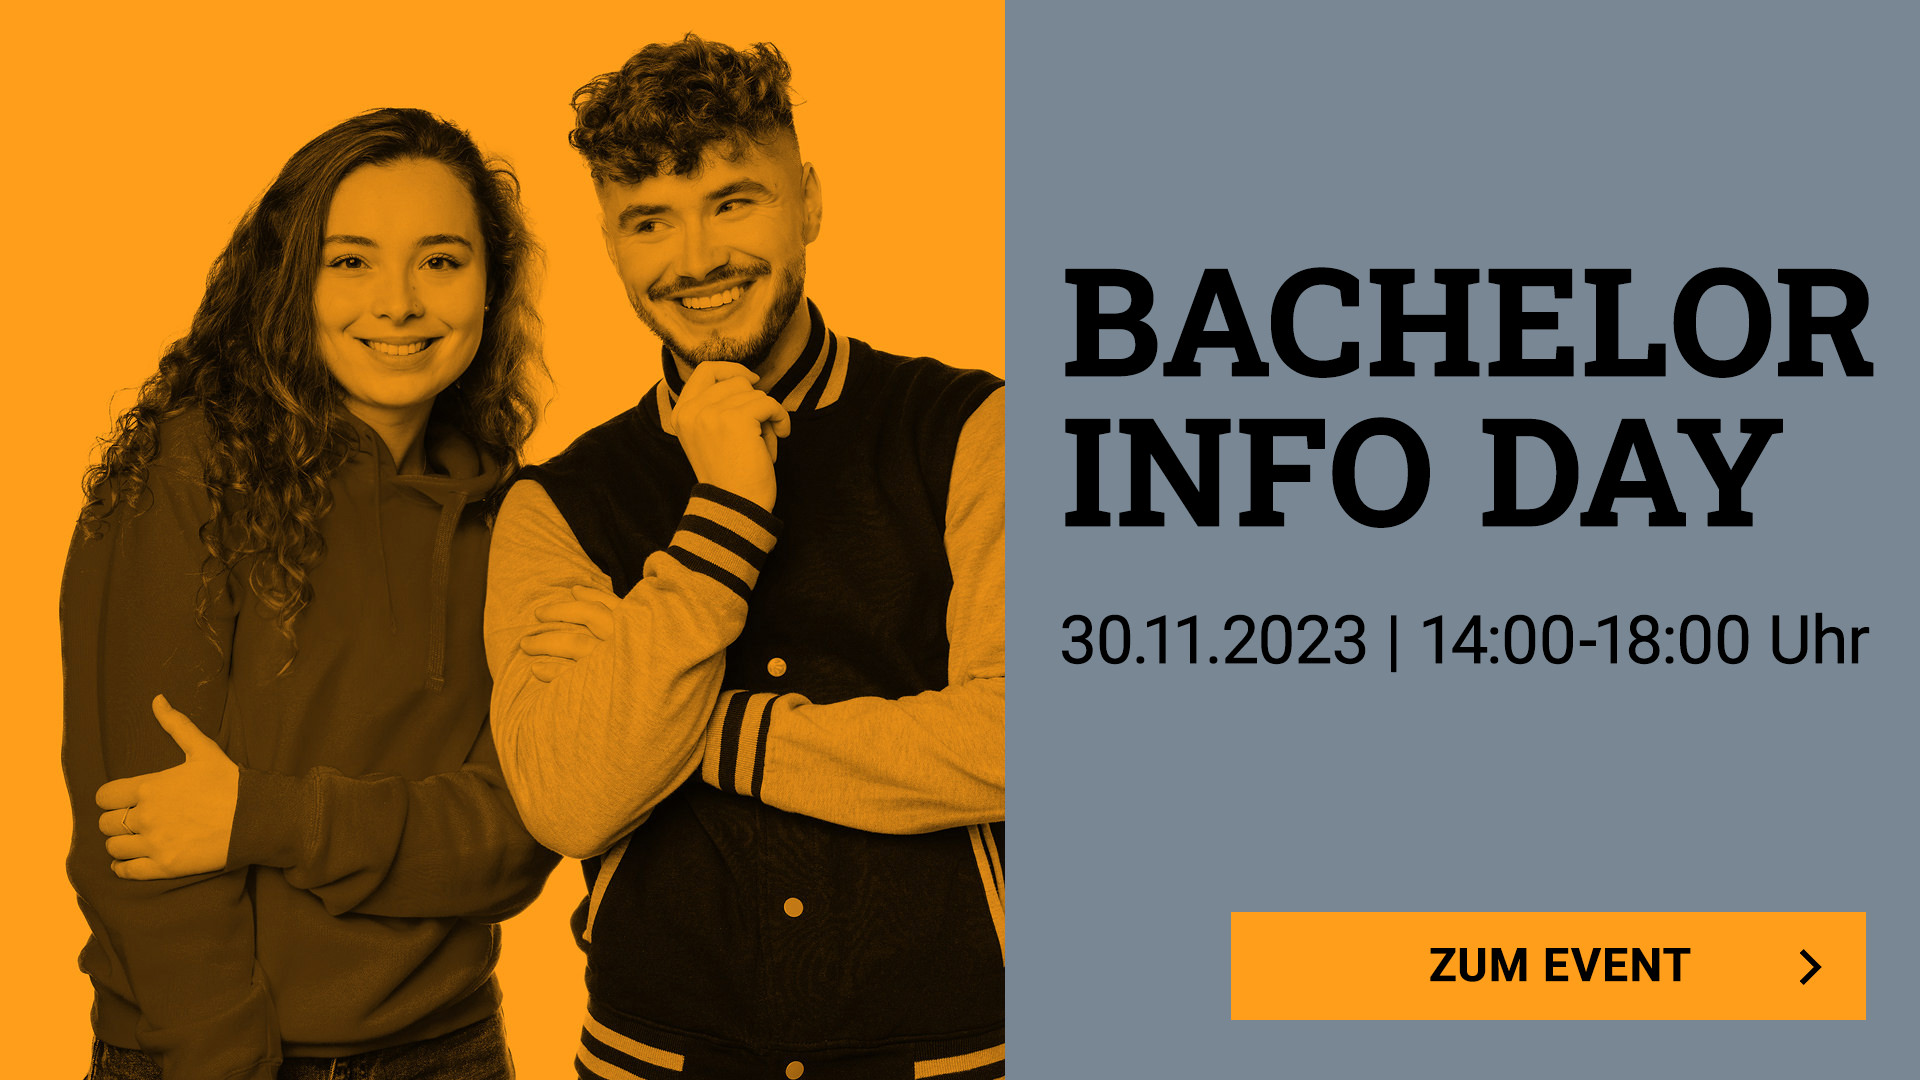 Bachelor Info Day, 30.11.2023